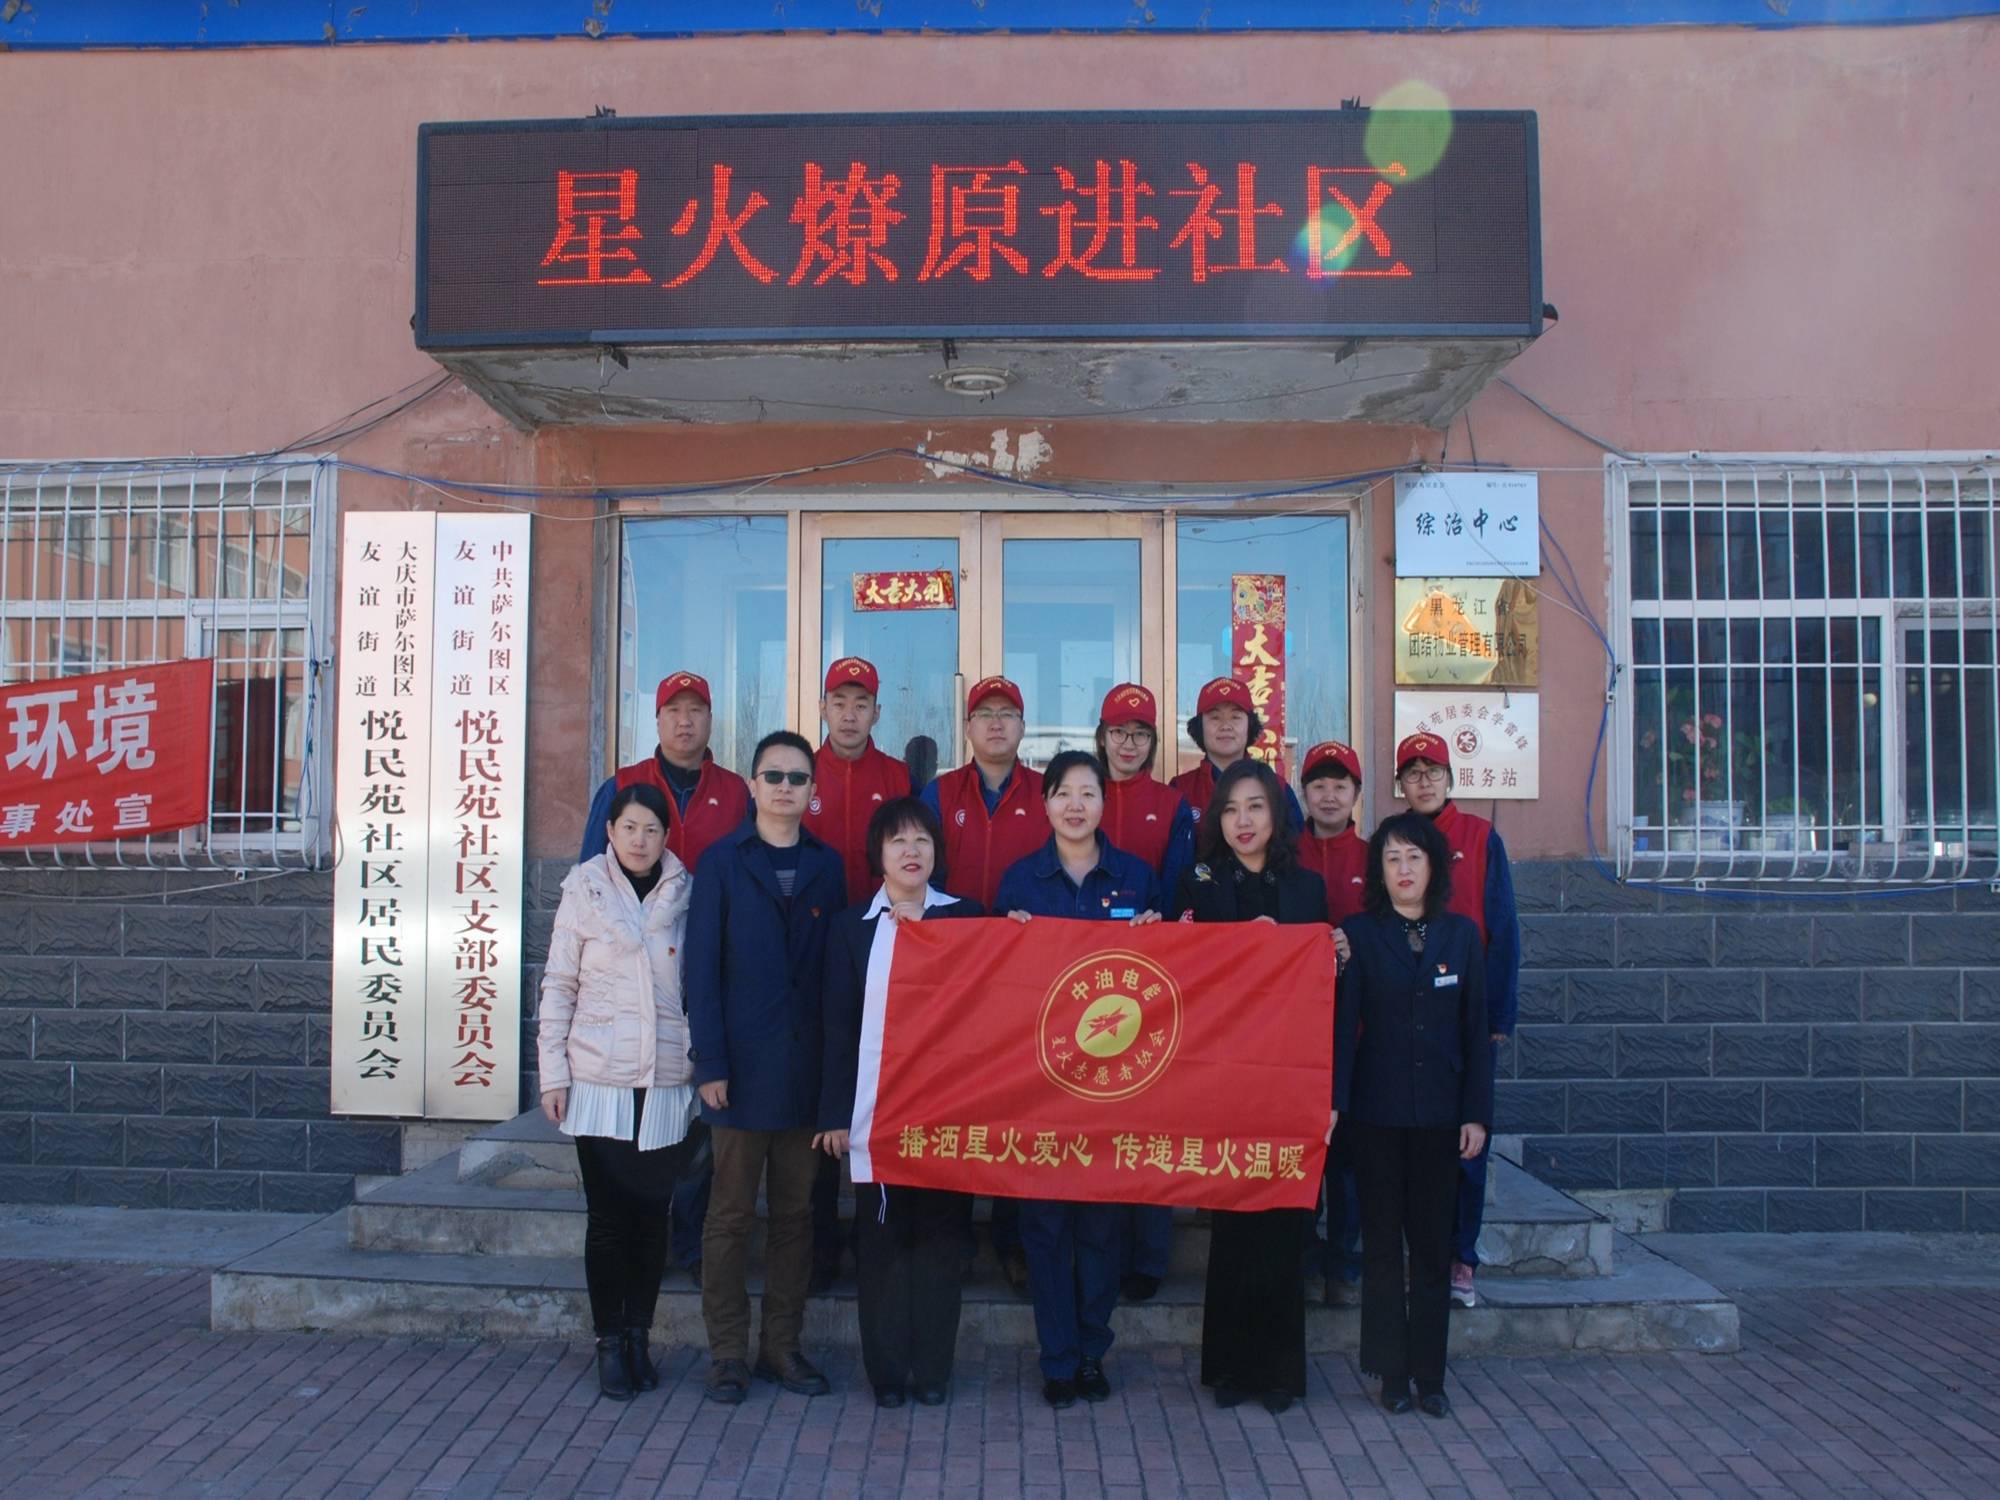 [PPT]中国石油集团电能有限公司《四合格四带头 践行社会主义核心价值观》